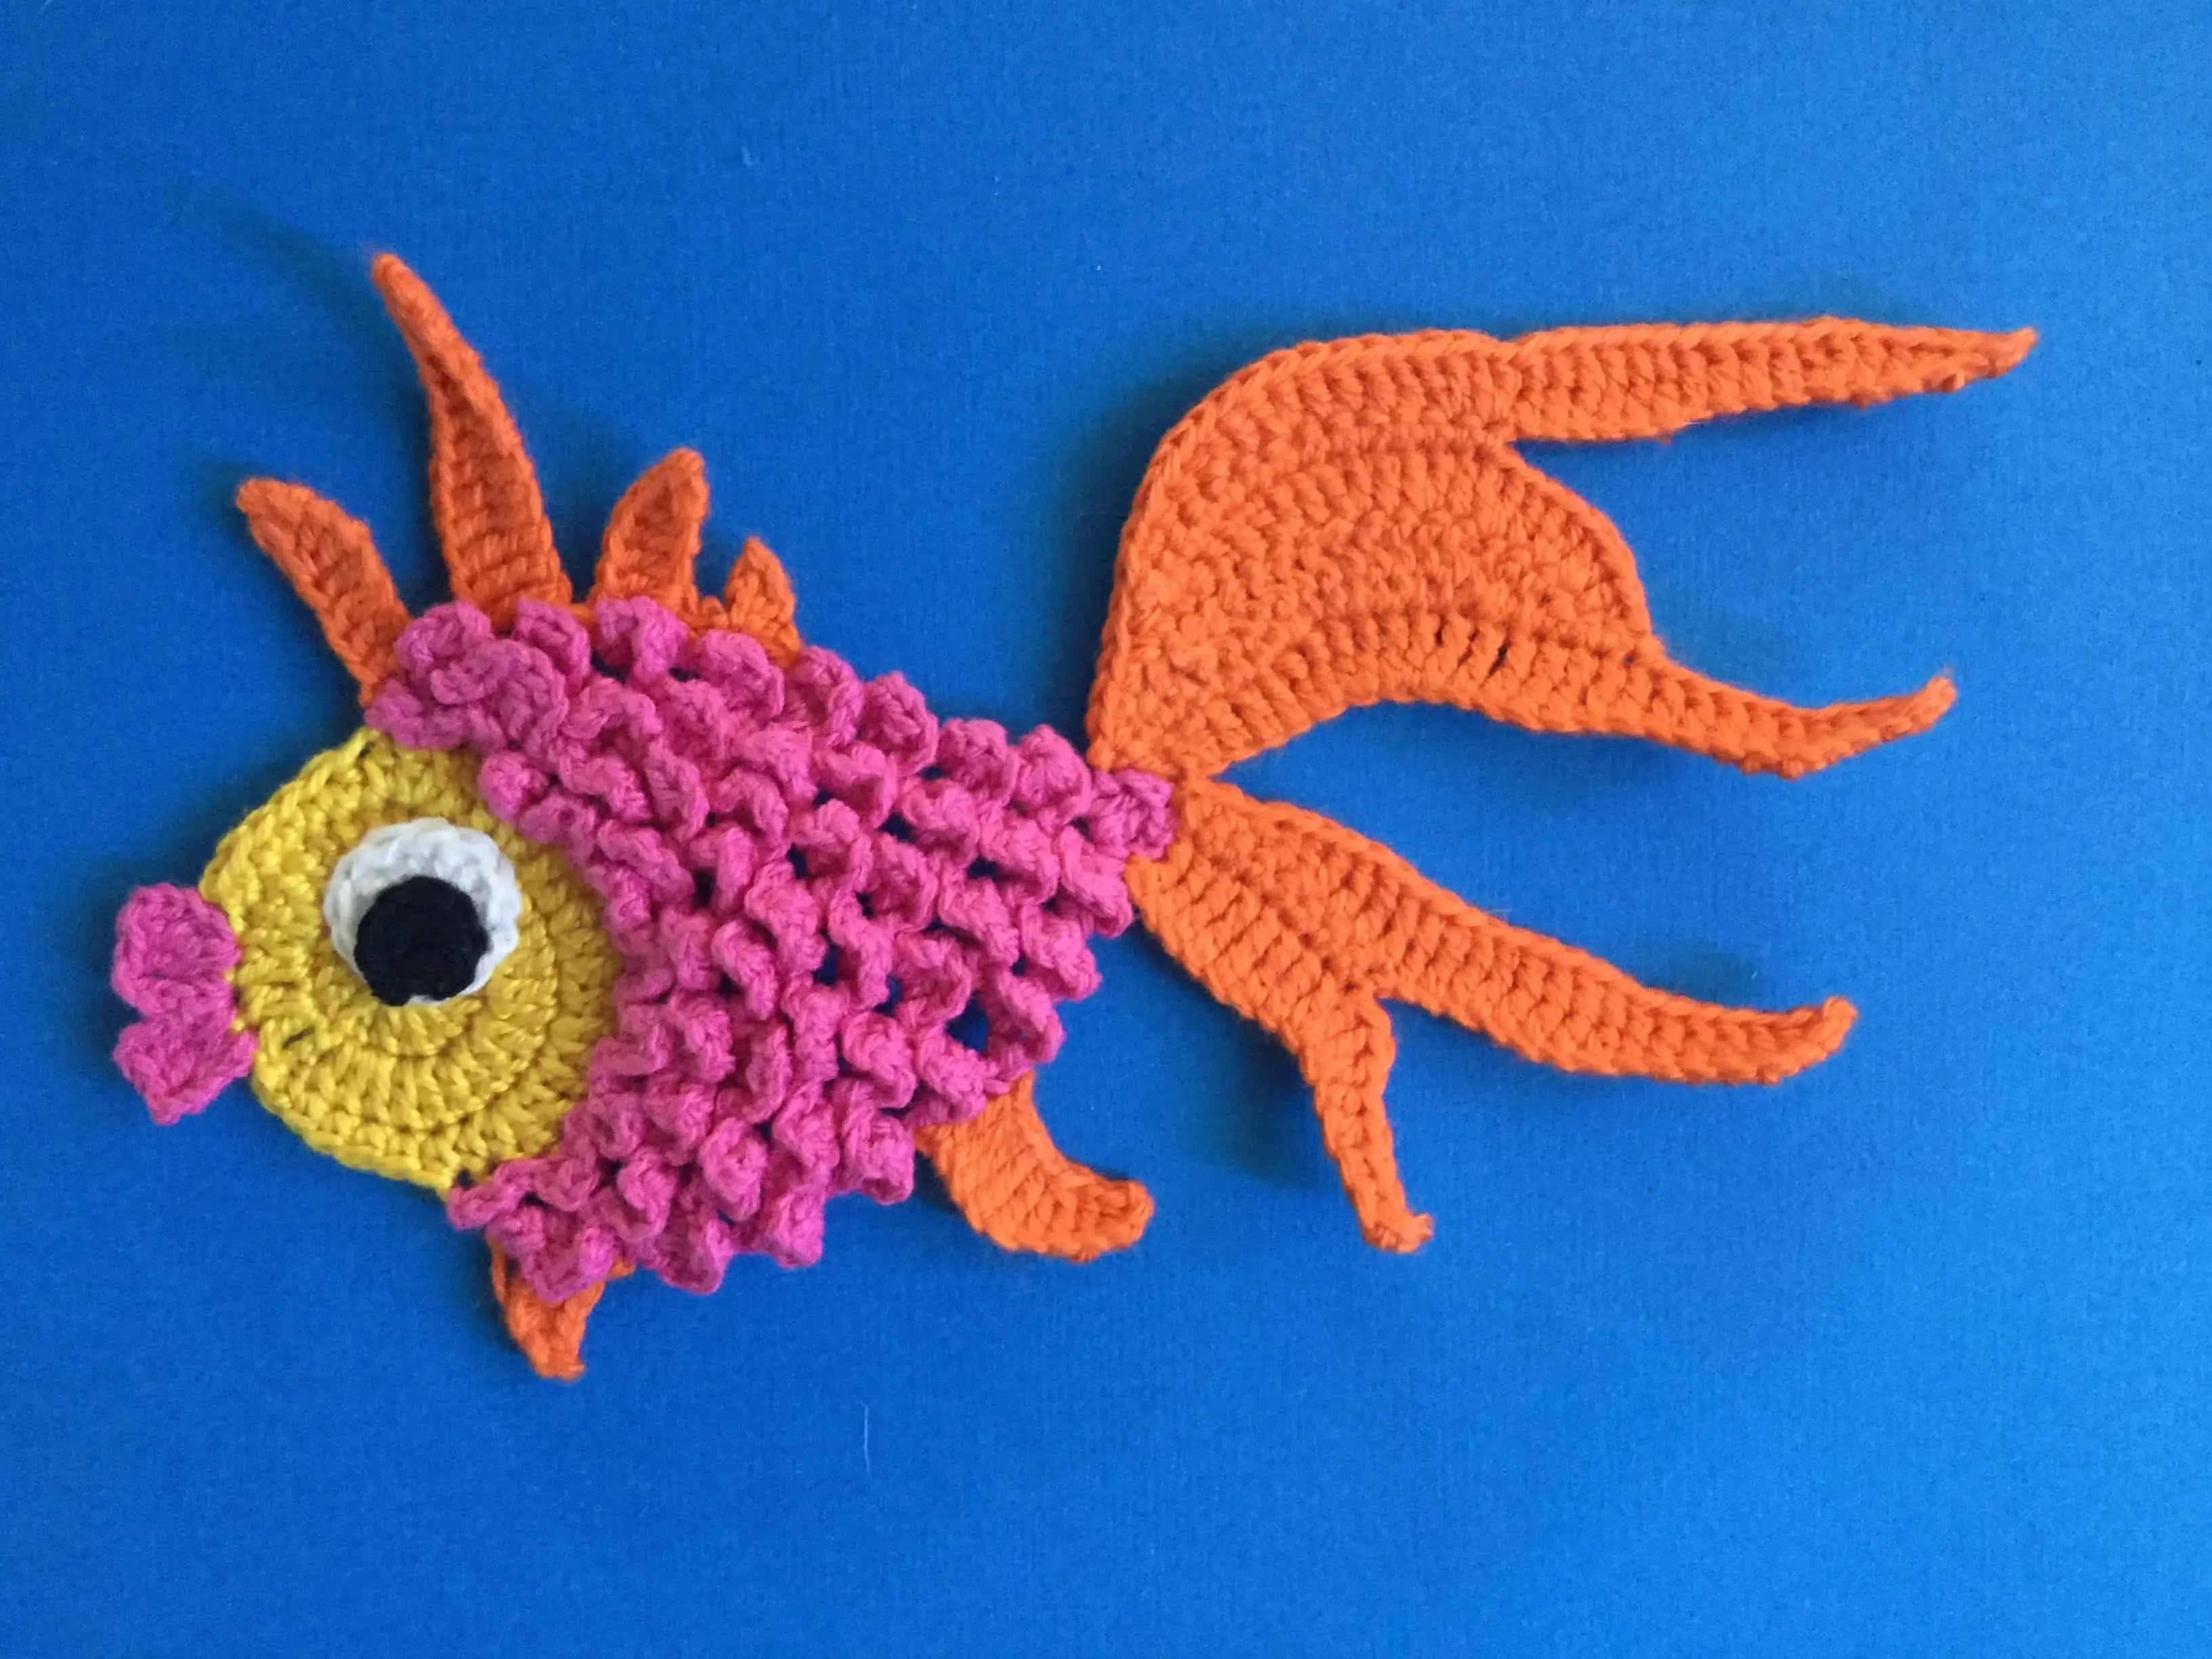 Finished crochet goldfish